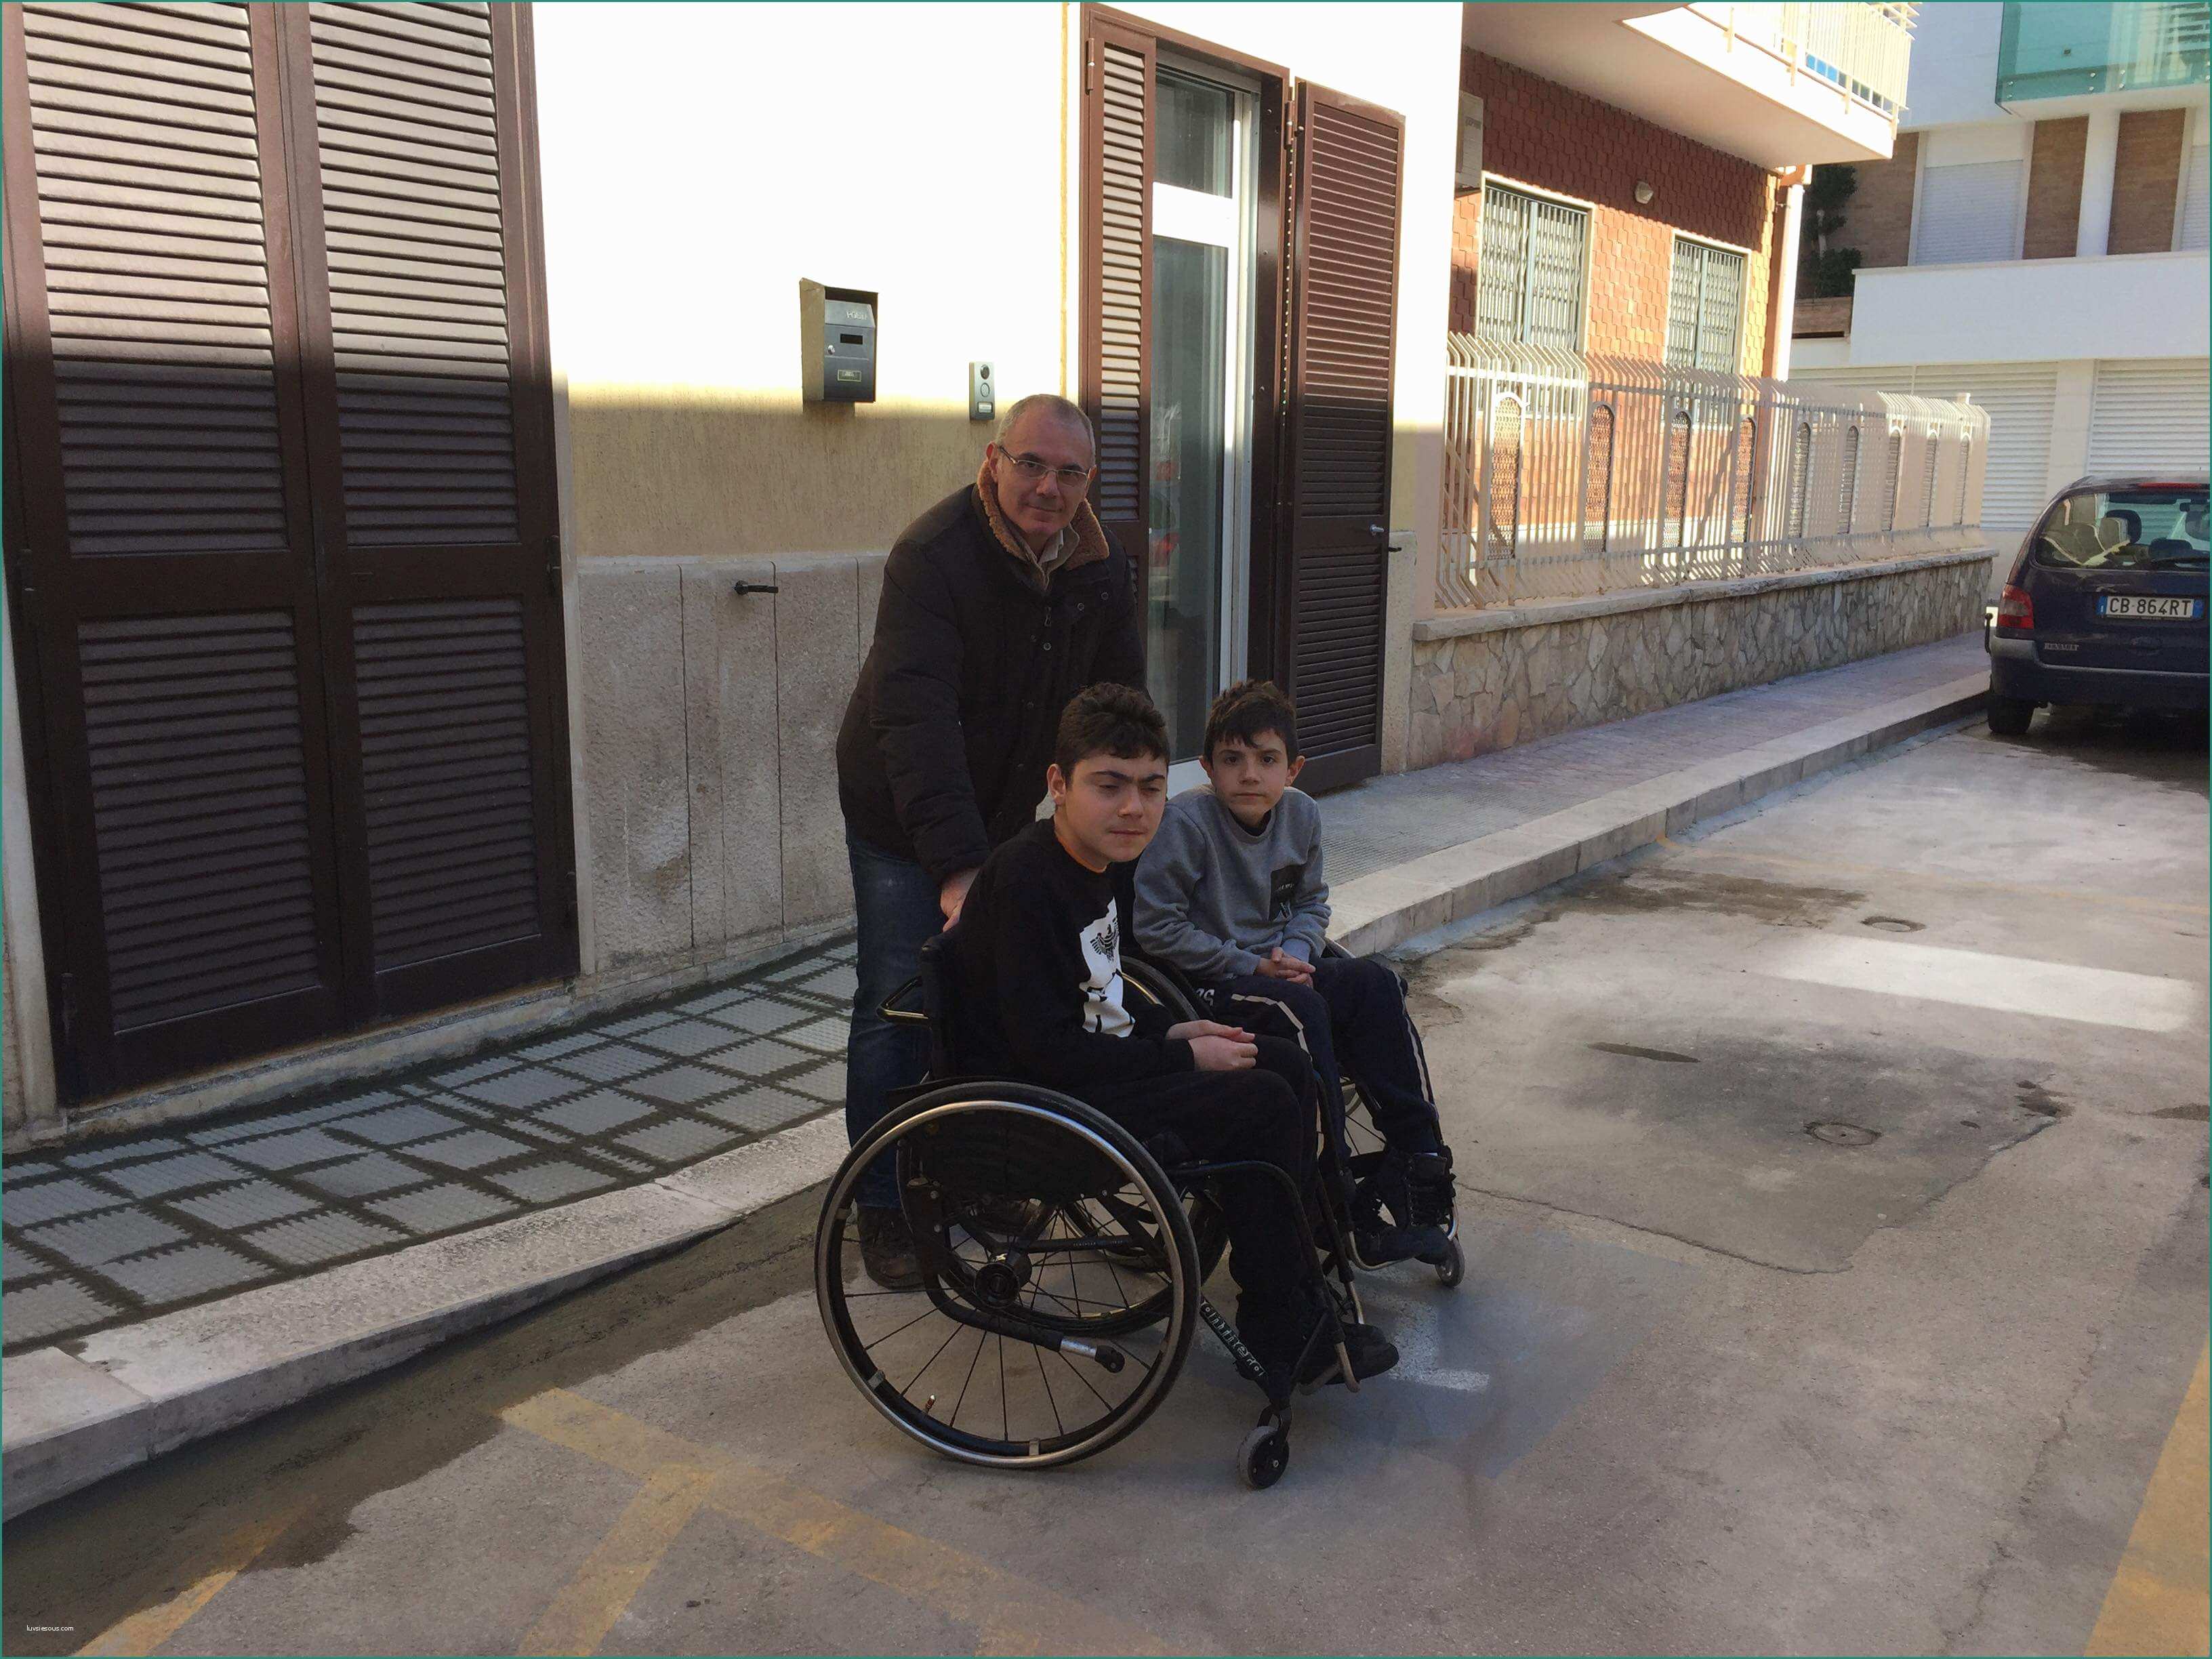 Carrozzine Per Disabili Usate E L associazione Angeli Senza Frontiere Colpisce Ancora Realizzato